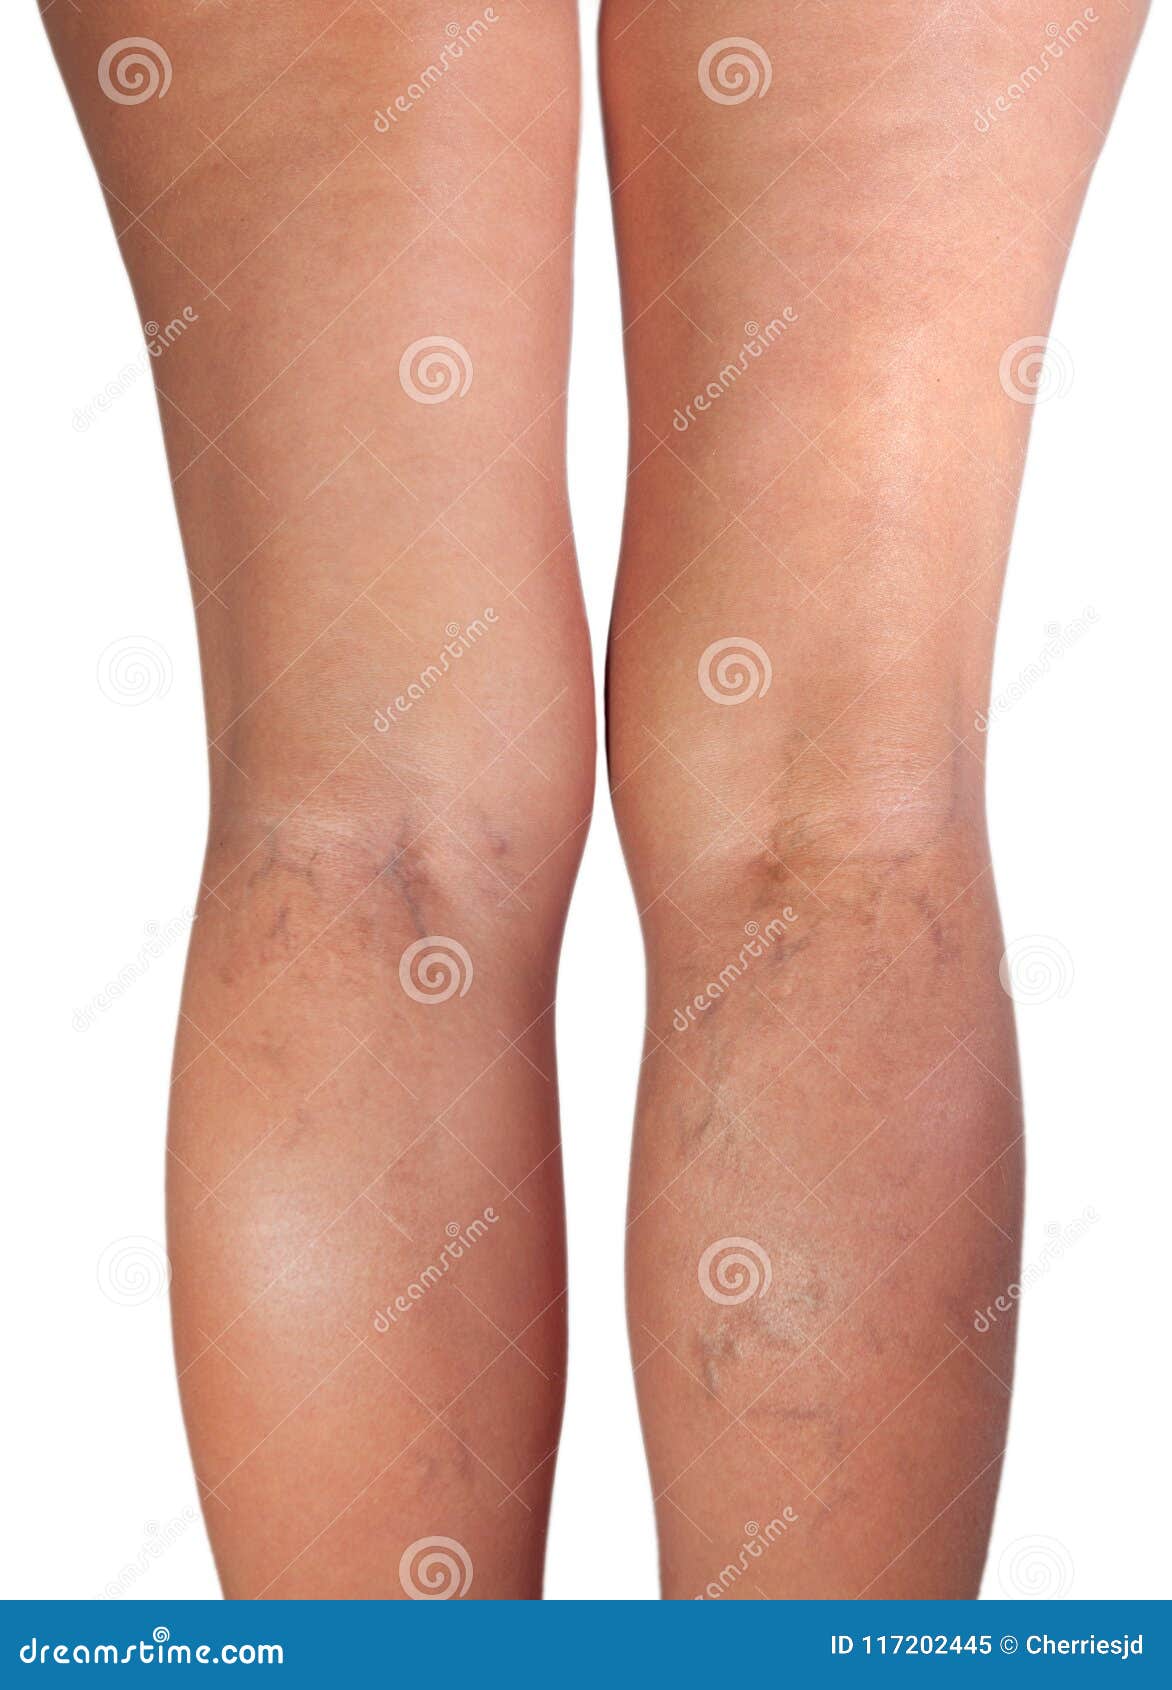 durerea în tratamentul picioarelor varicoza cum se aplica cu oet de mere varicoza